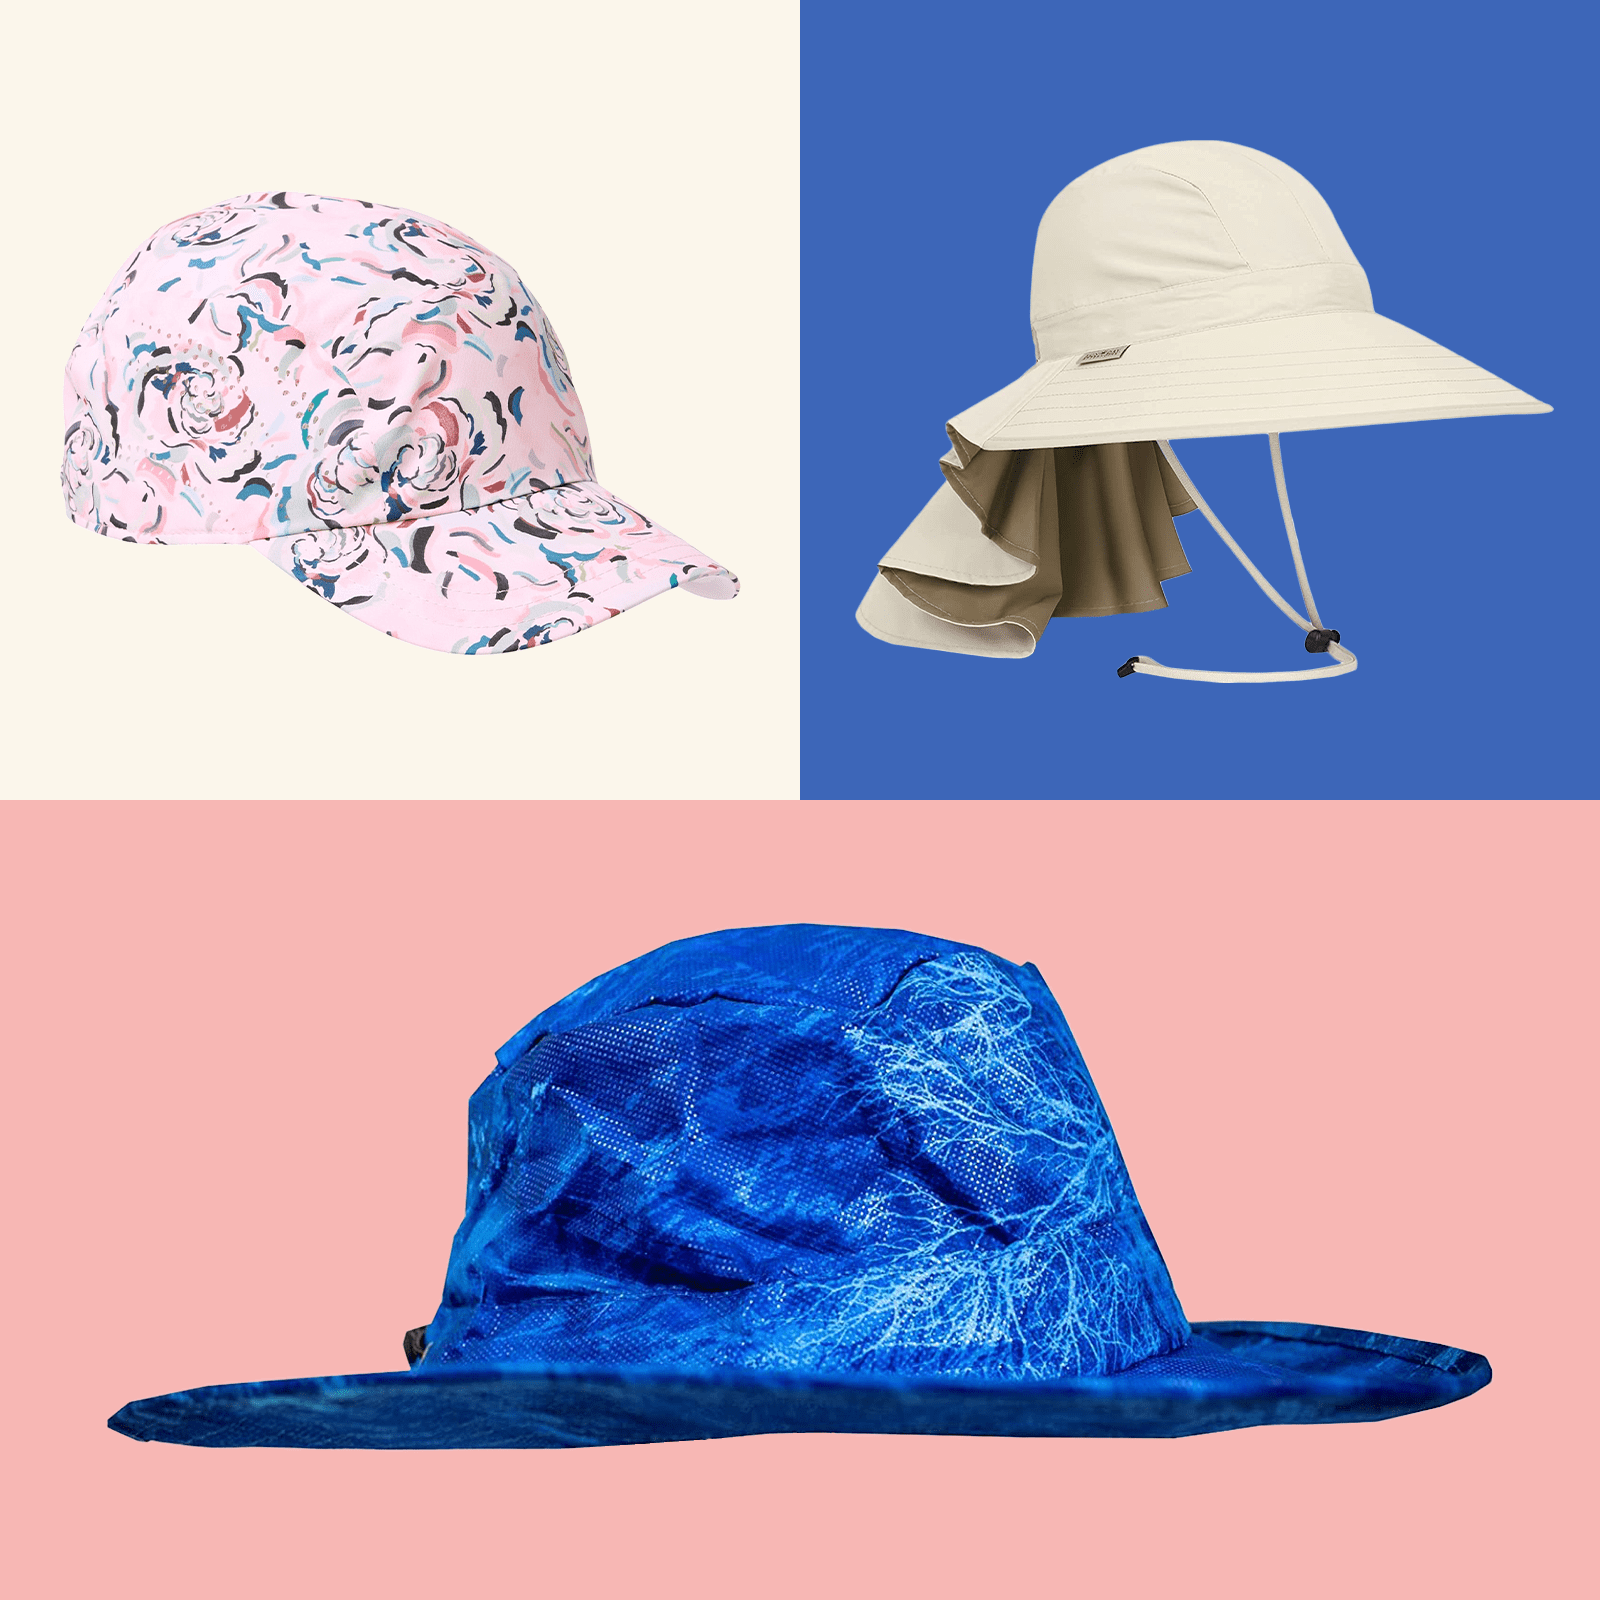 https://www.rd.com/wp-content/uploads/2021/05/18-best-summer-hats-ft-via-merchant.png